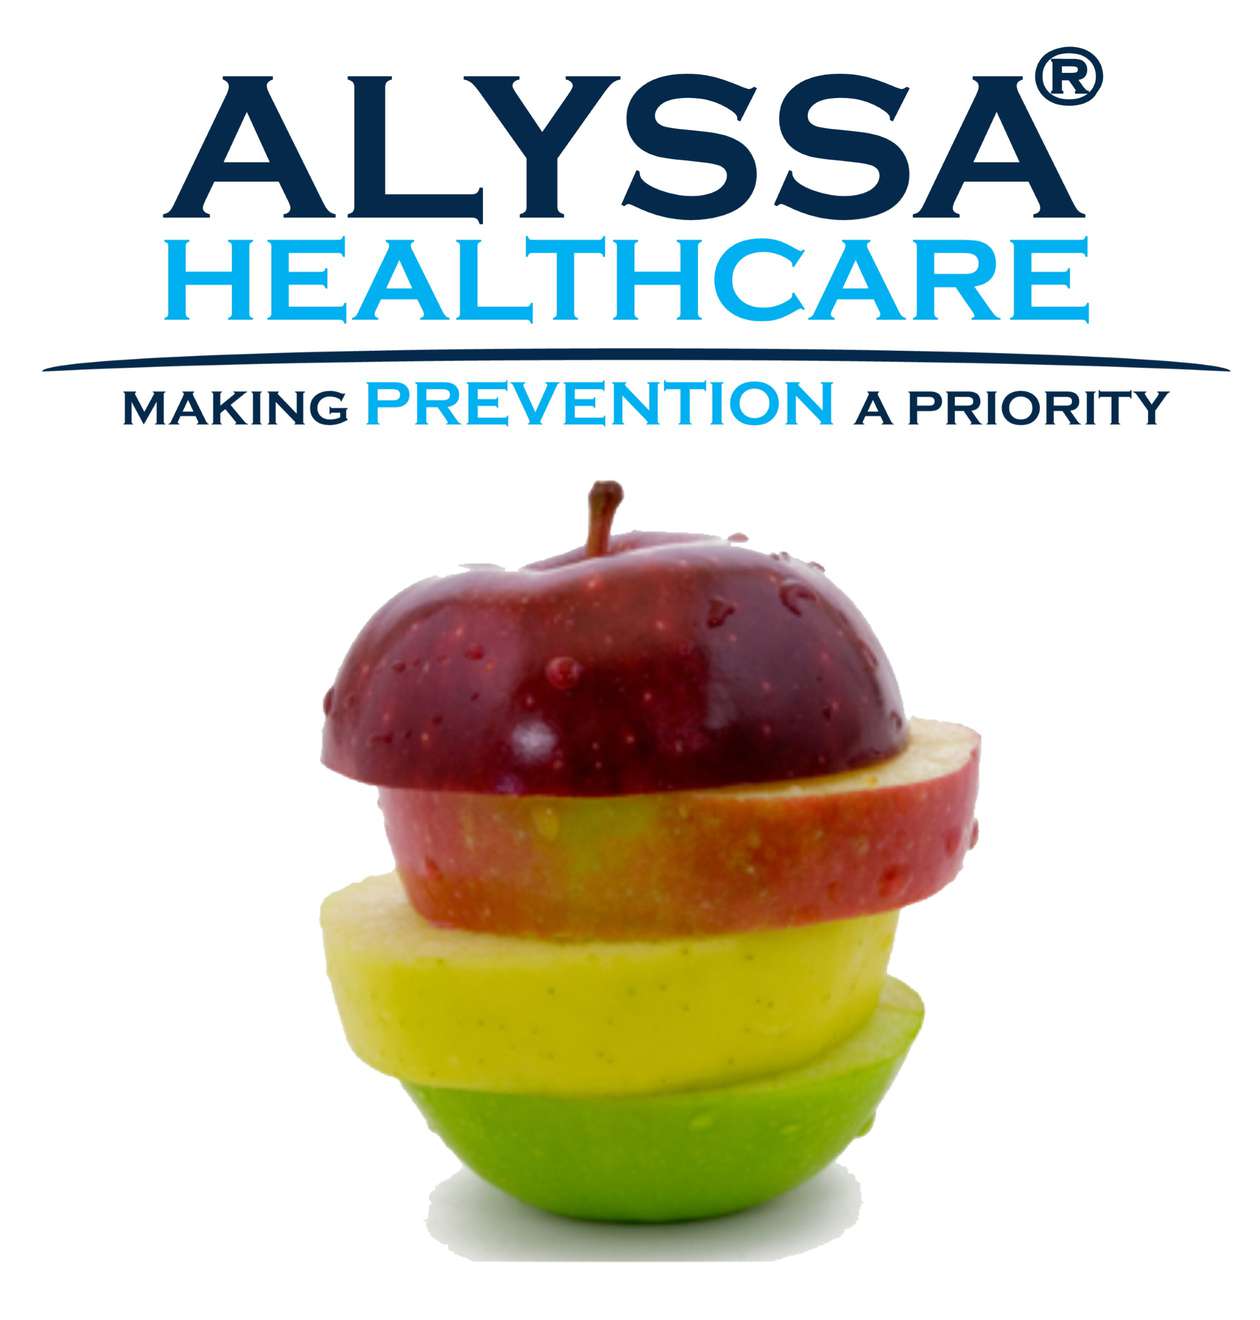 Alyssa Healthcare